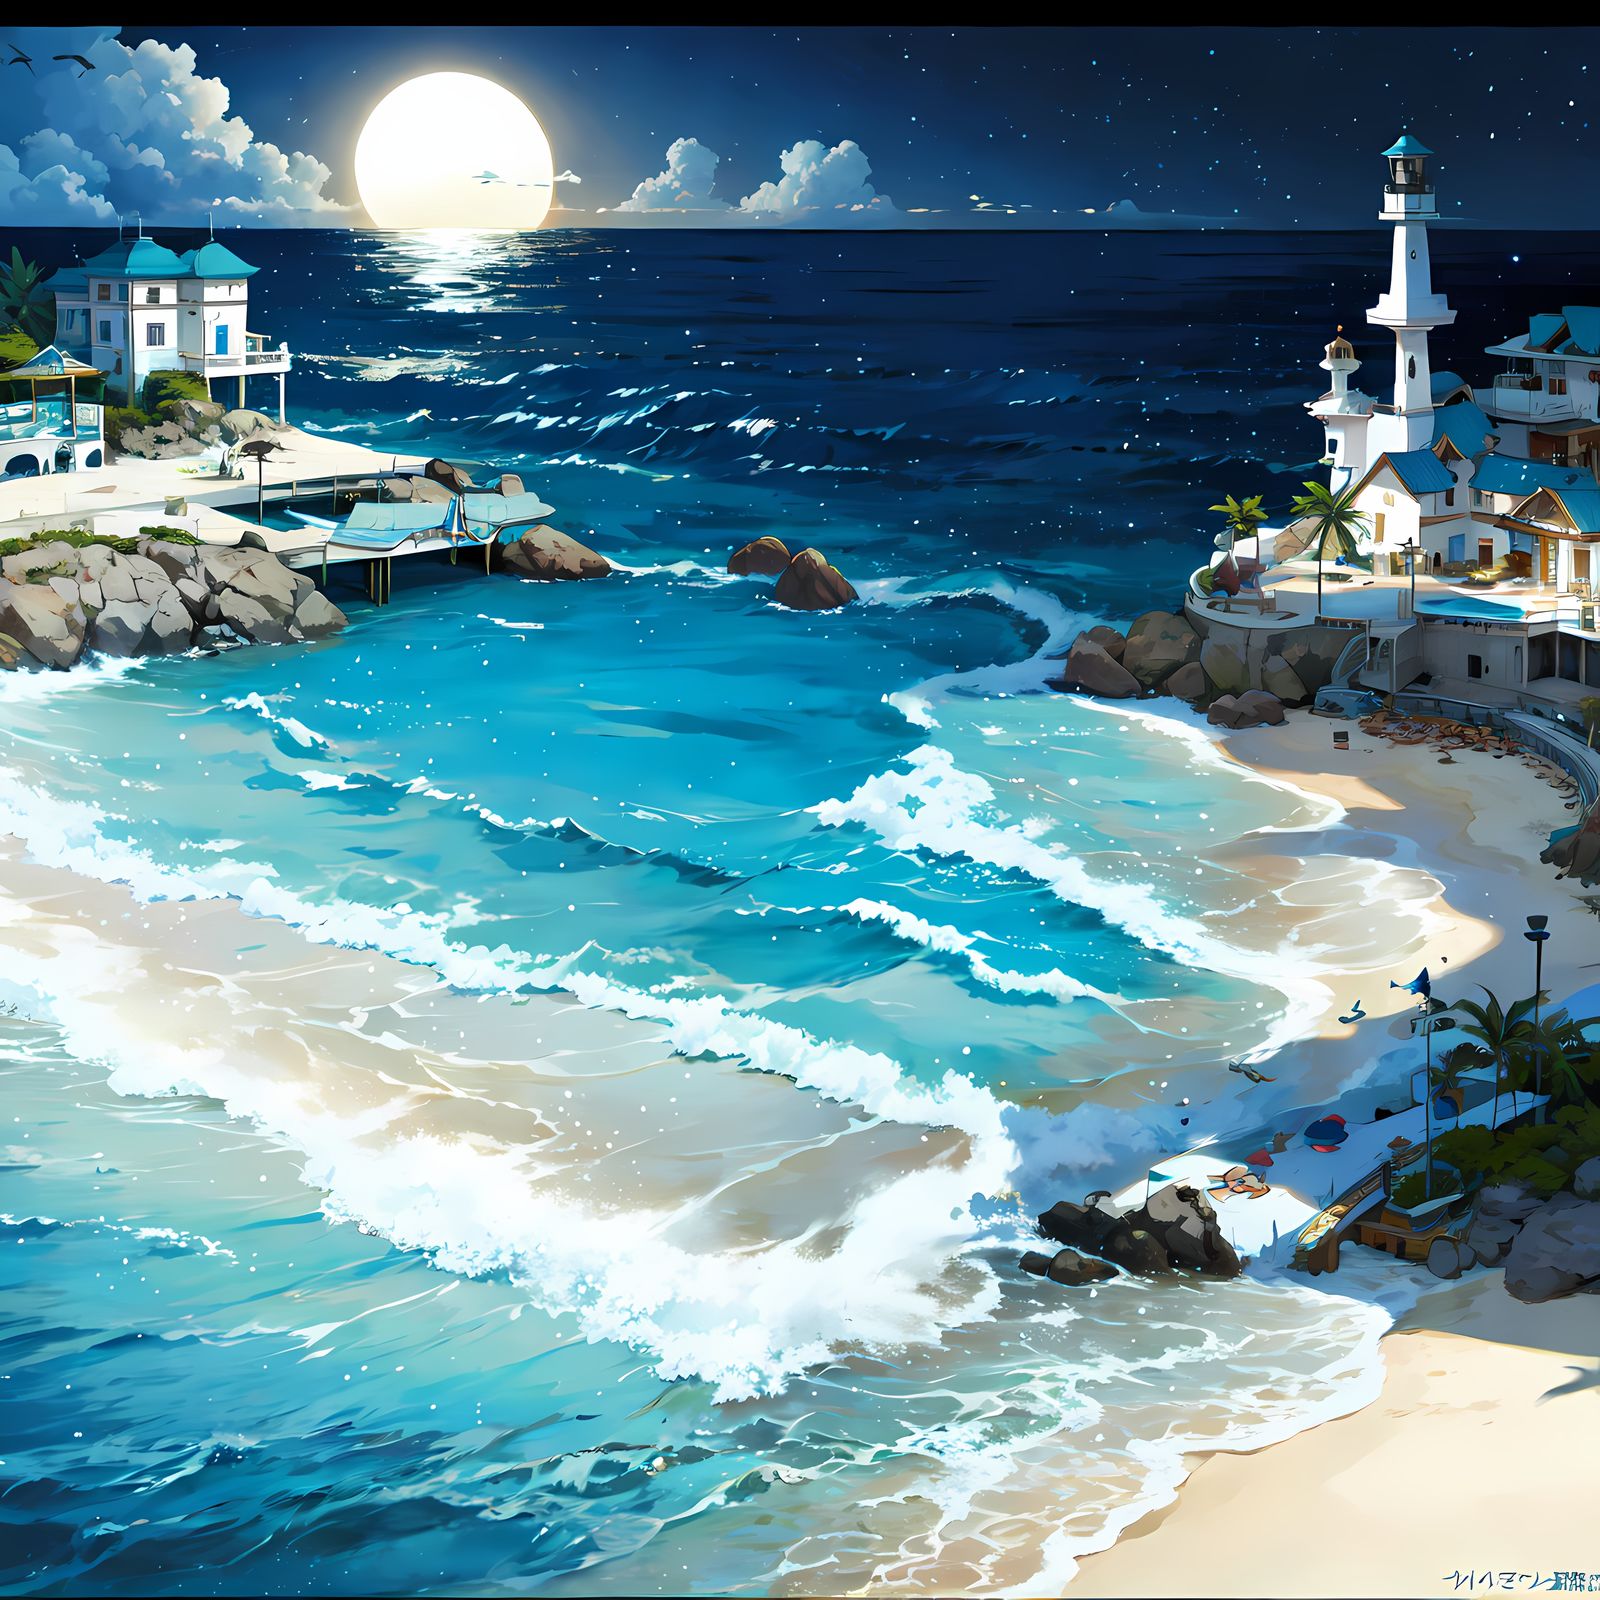 盛夏夜晚的海边小镇插画图片壁纸